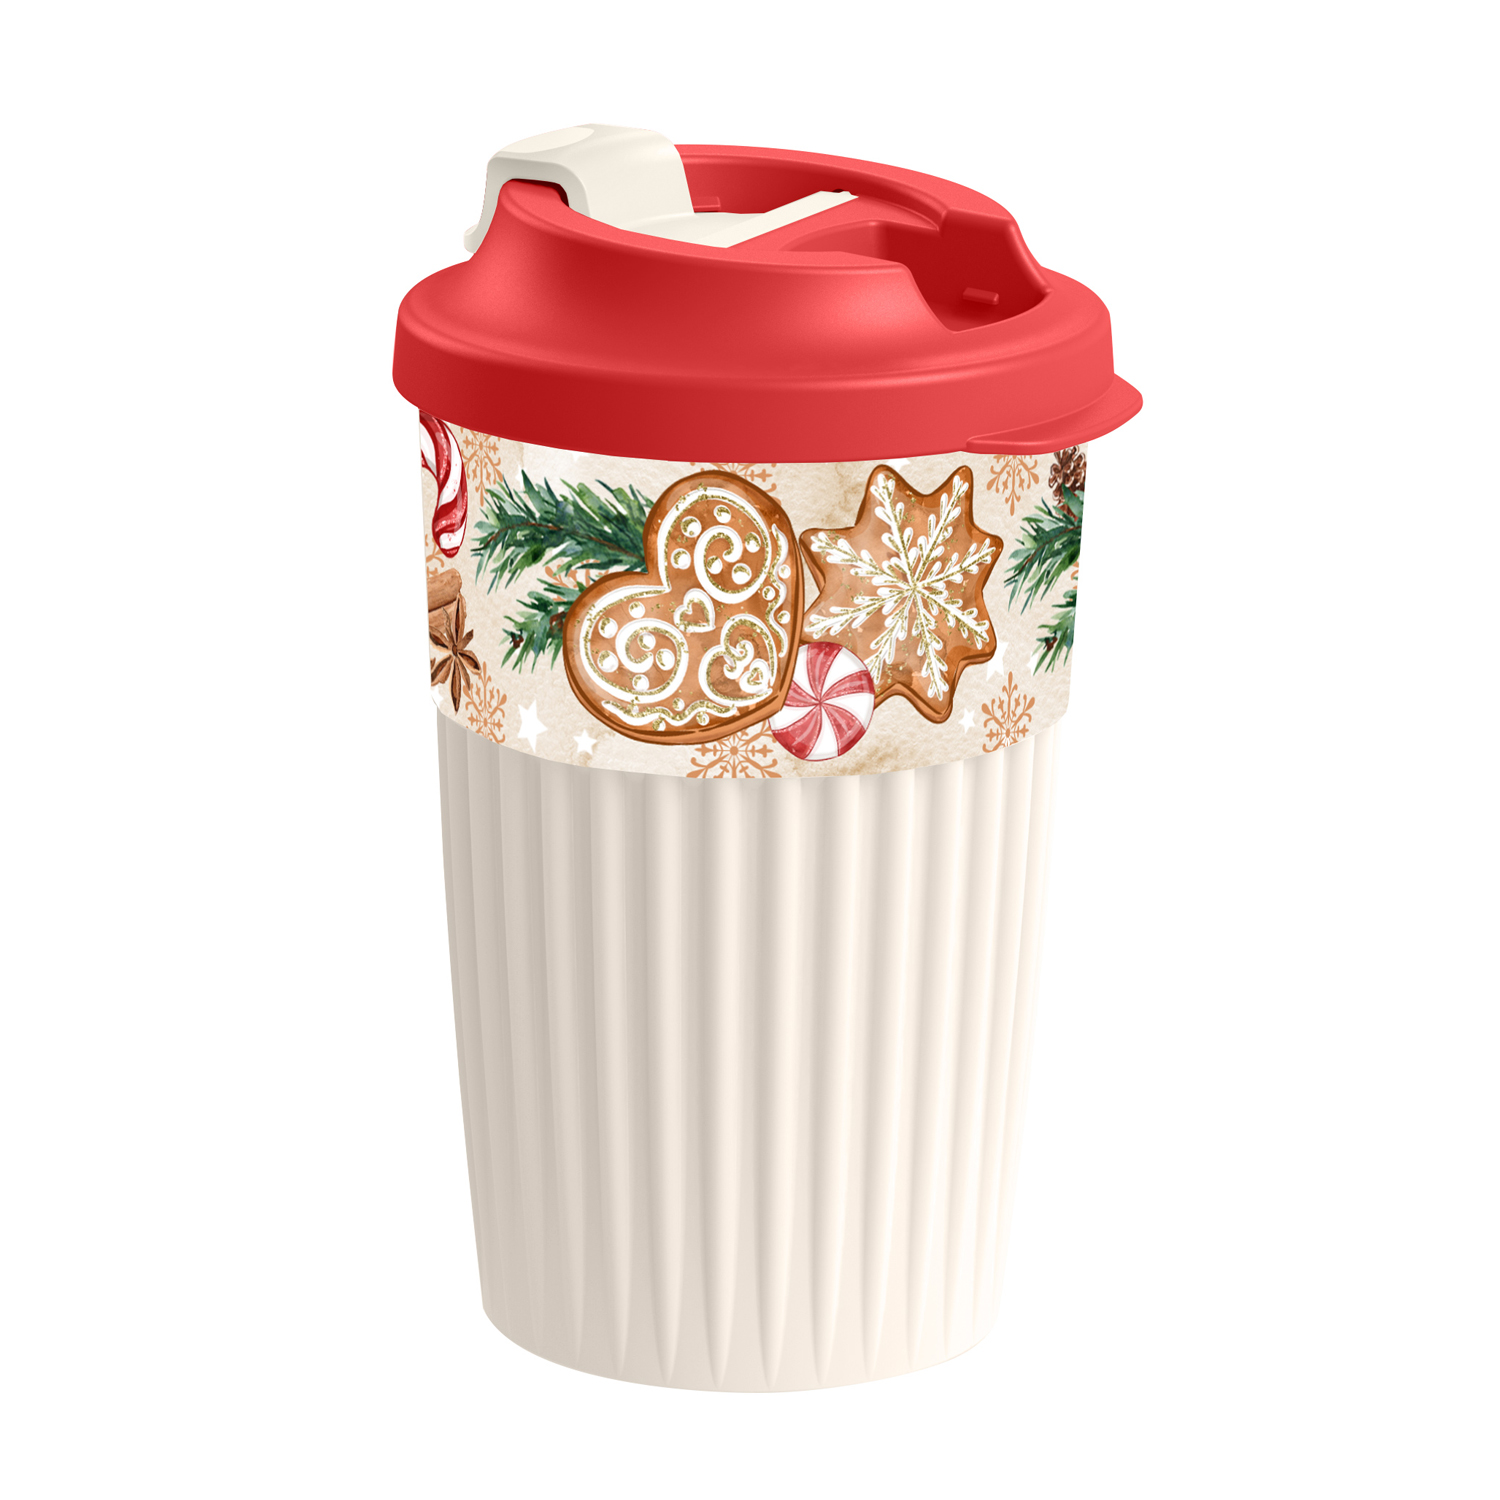 Стакан Phibo для горячих напитков с клапаном и новогодним декором - фото 1